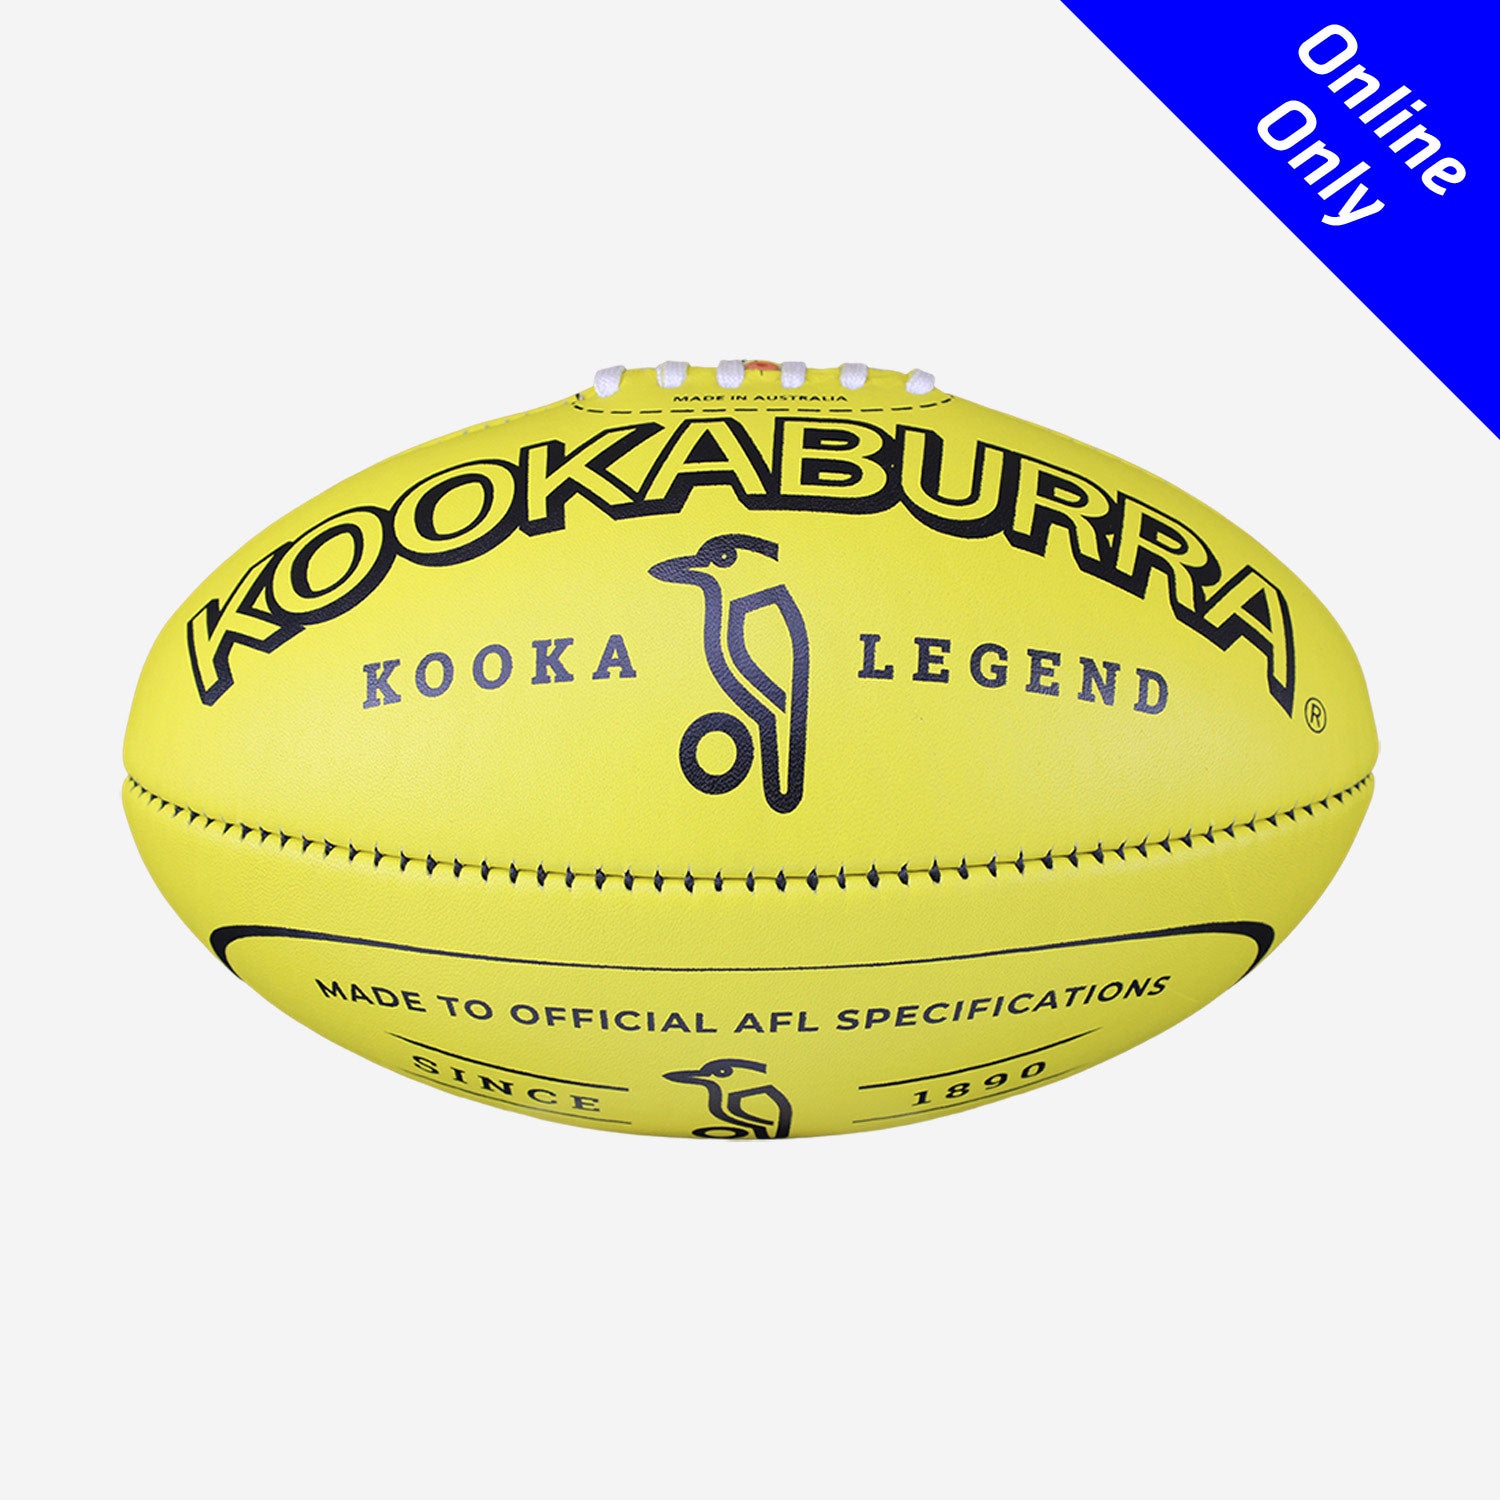 Kookaburra - Legend Aussie Rules Football